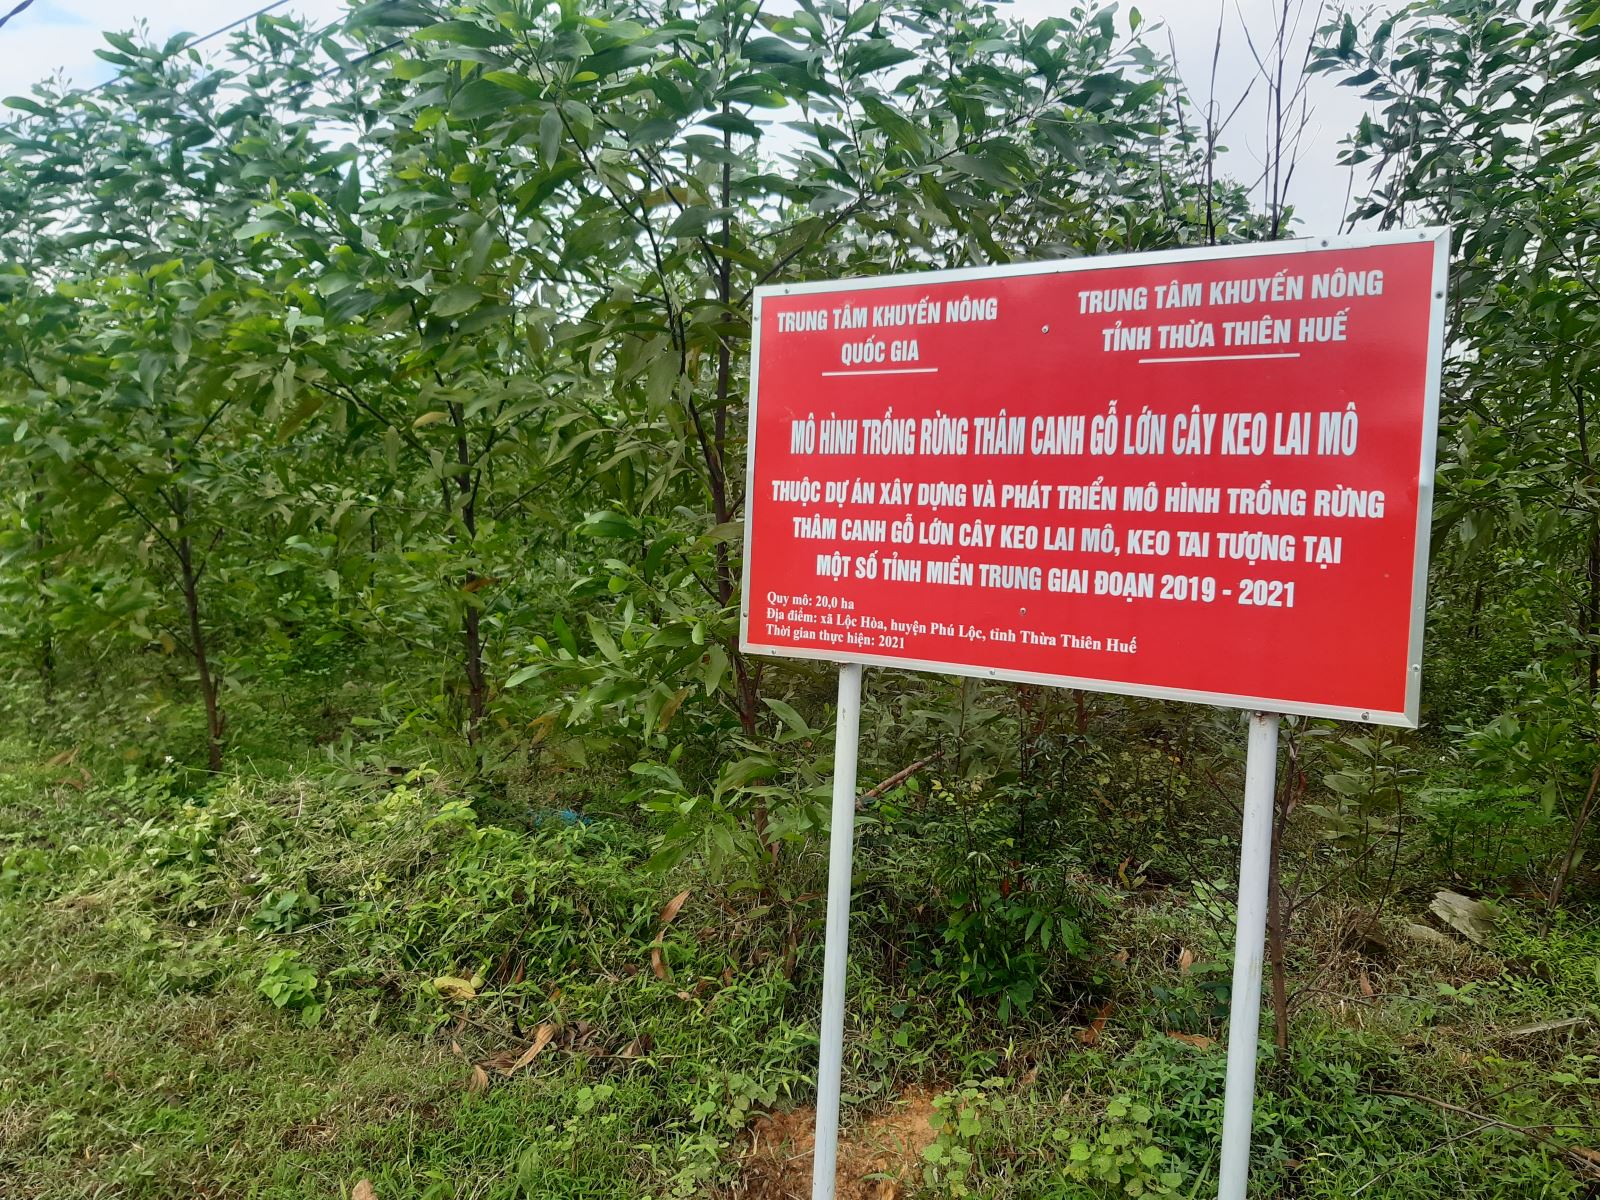 Phó Chủ tịch UBND tỉnh Thừa Thiên Huế Hoàng Hải Minh yêu cầu các địa phương thành lập Tổ công tác cấp huyện về chỉ đạo trồng rừng gỗ lớn, ưu tiên lồng ghép các nguồn lực để đầu tư, hỗ trợ trồng rừng gỗ lớn và chuyển hóa rừng trồng gỗ nhỏ sang rừng trồng gỗ lớn.